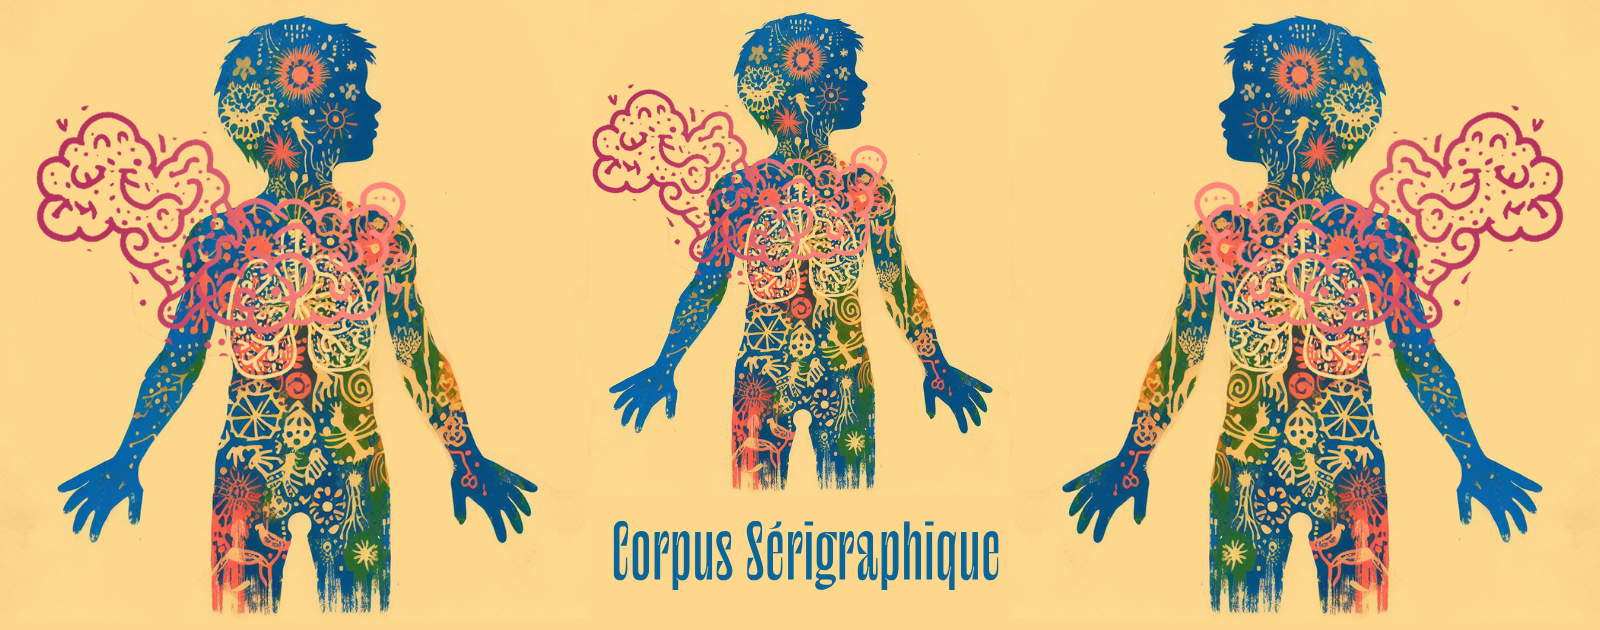 corpus serigraphique